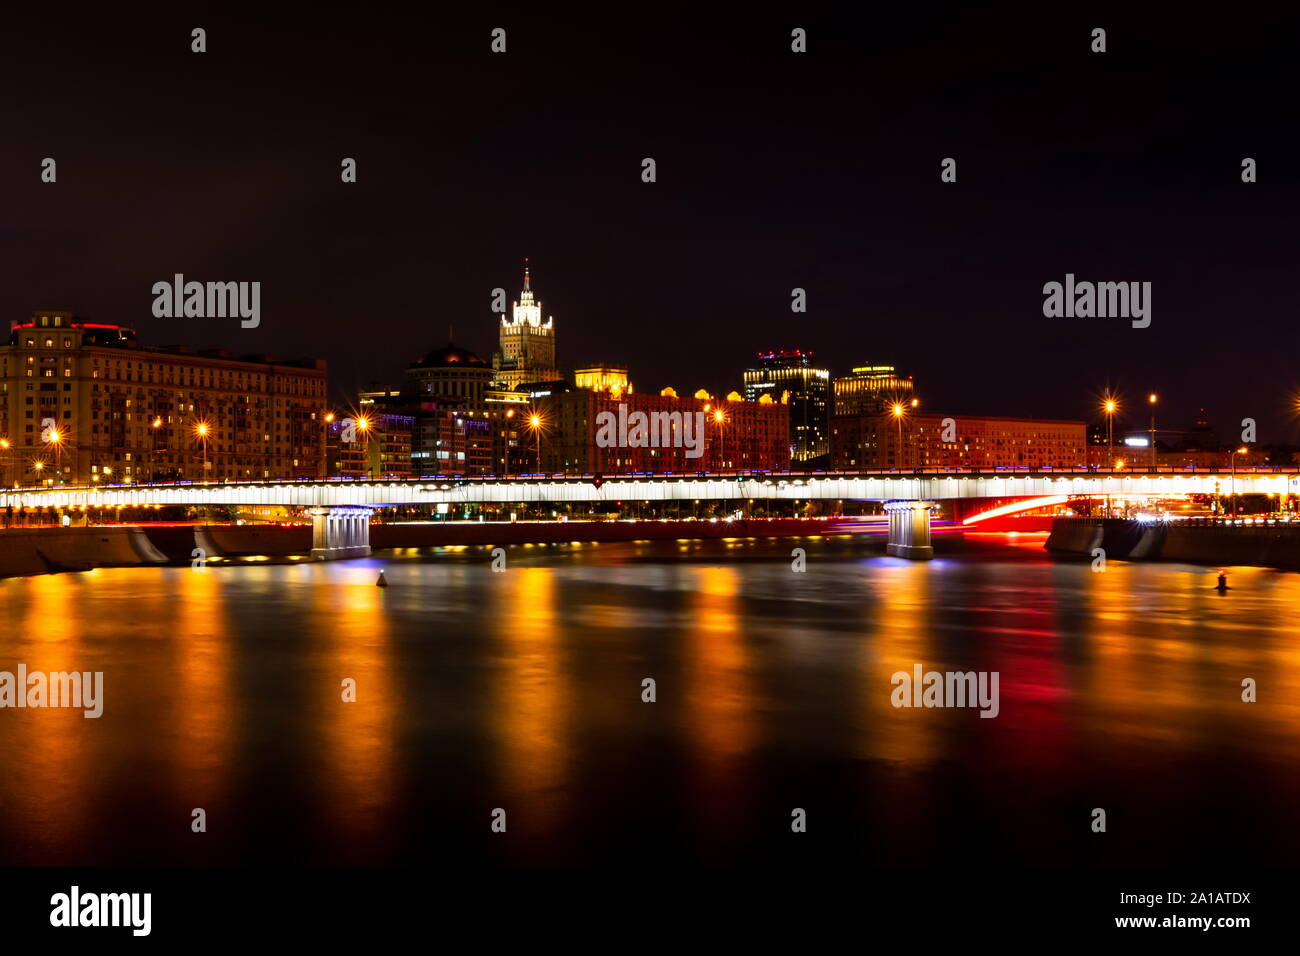 Krasnopresnenskaya embankment and Novoarbatskiy bridge. Cityscape of night Moscow. Stock Photo